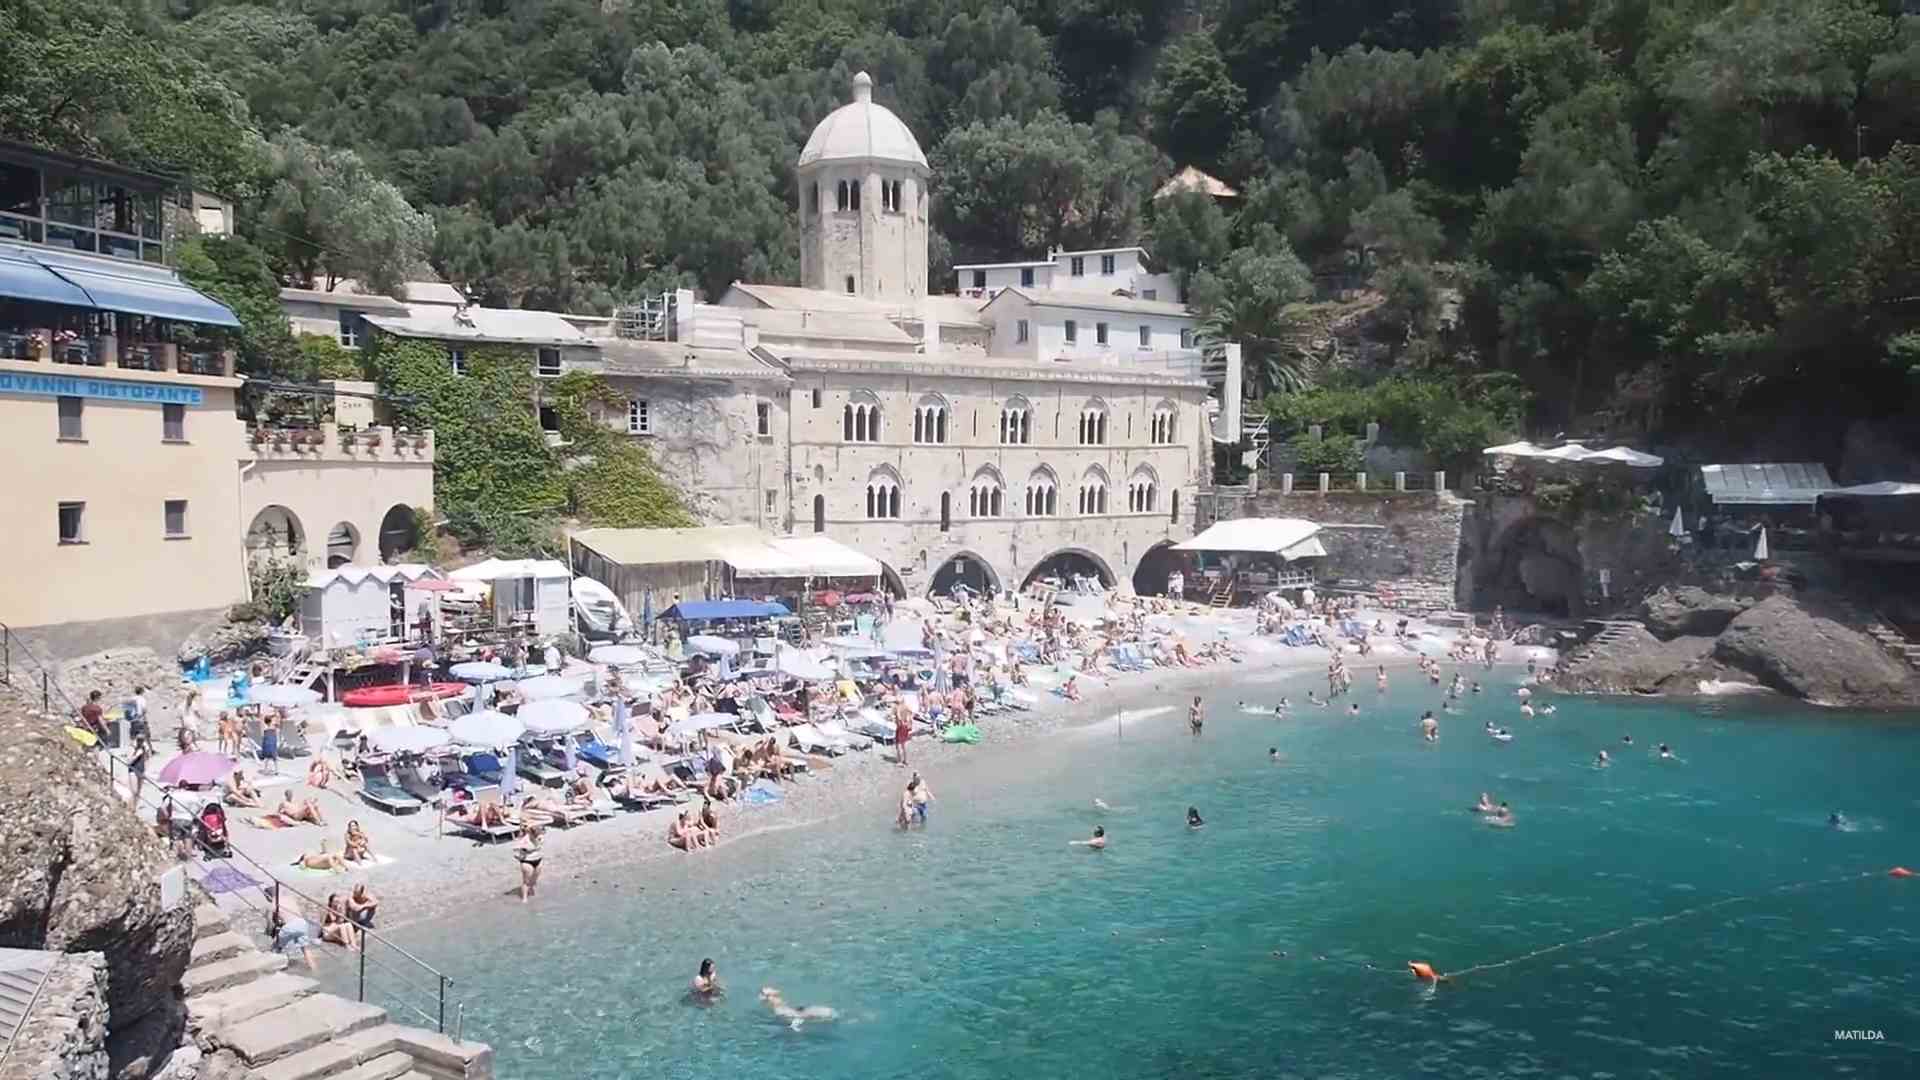 San Frutuoso: Liguria - beaches to enjoy